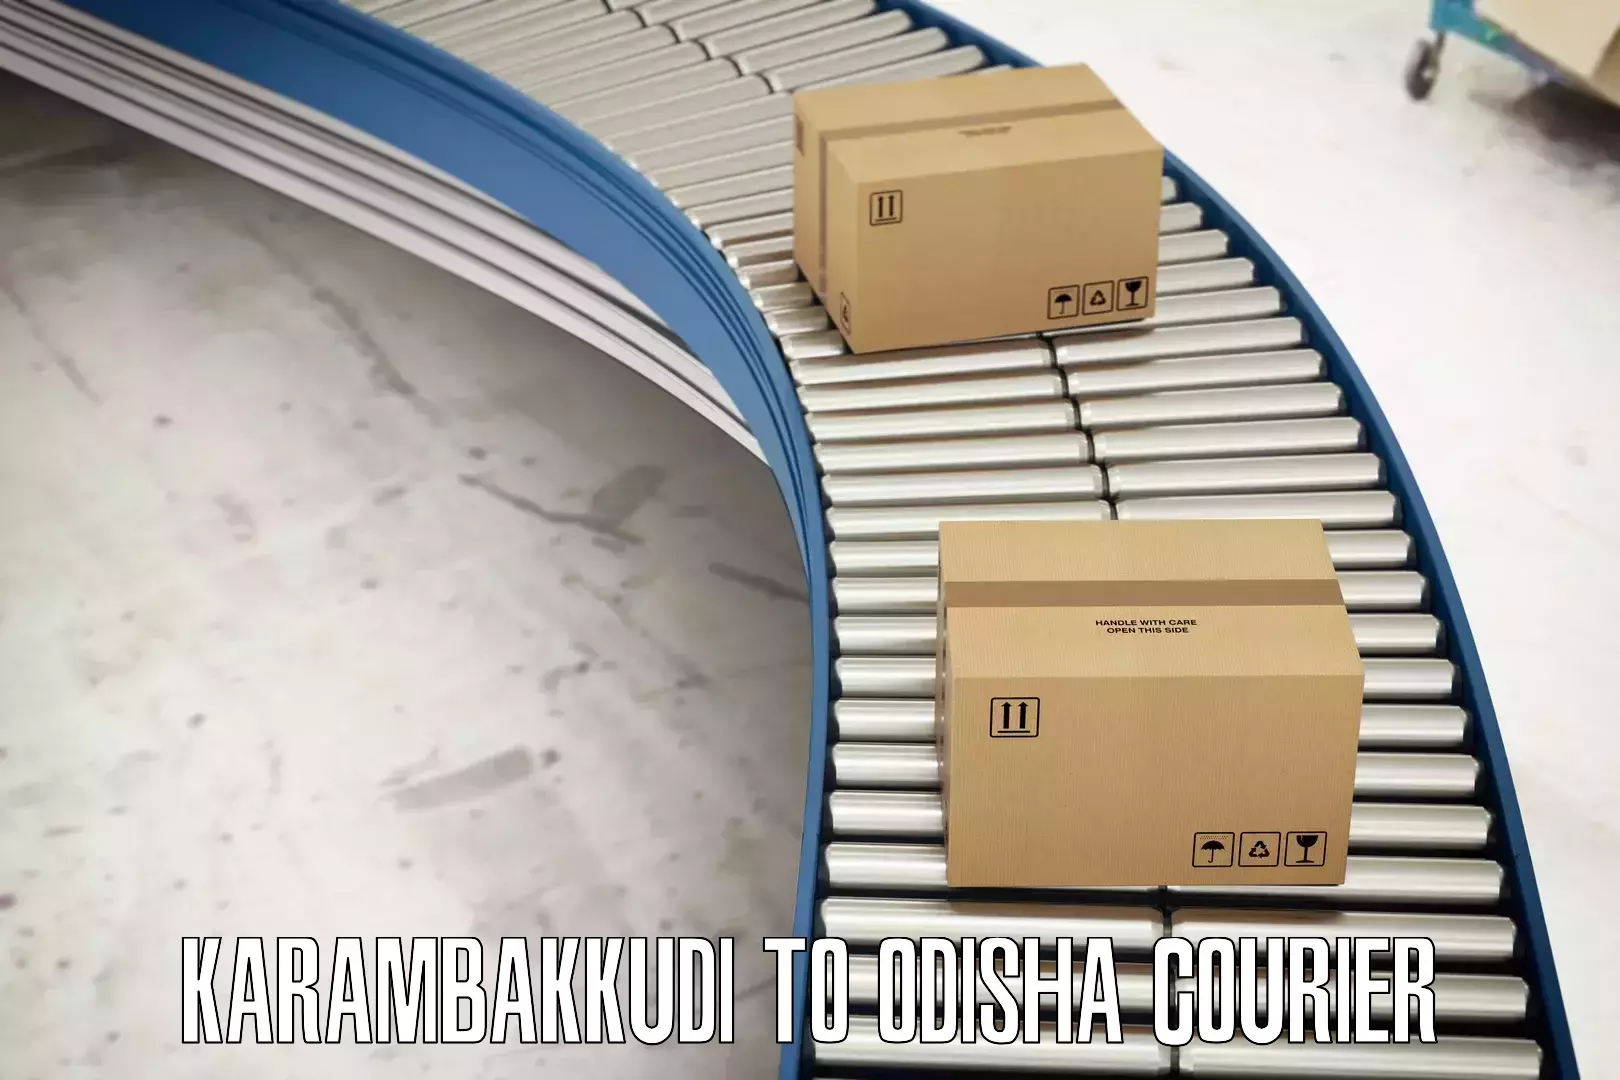 Customizable shipping options Karambakkudi to Sankerko